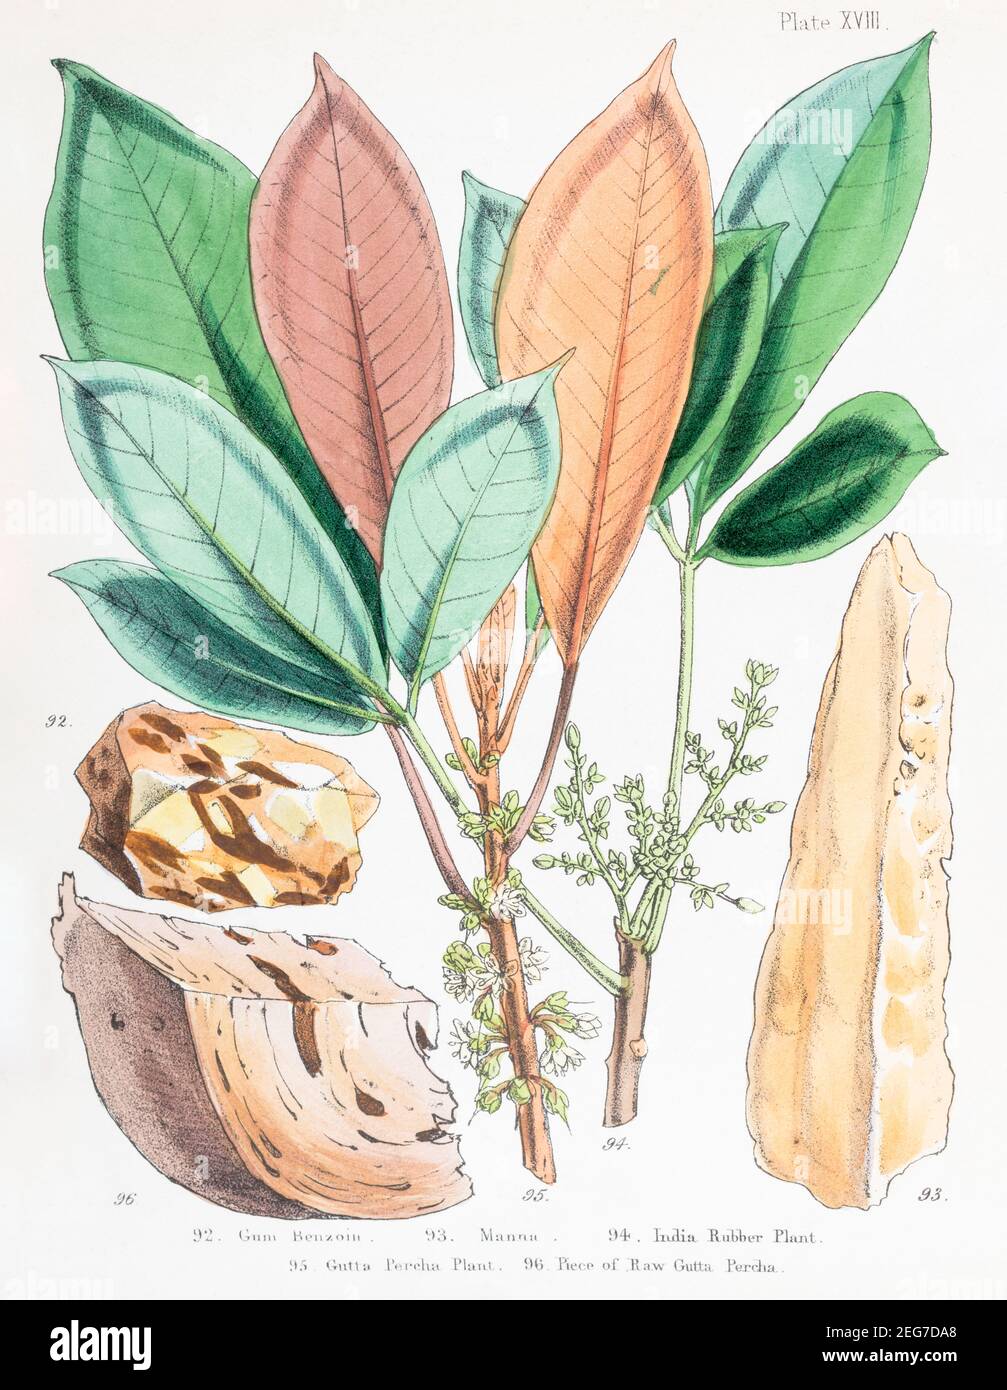 XIX sec. illustrazione botanica vittoriana dipinta a mano di Gum Benzoin & Manna, India Rubber & gutta Percha piante + gutta Percha grezza. Vedere le note. Foto Stock